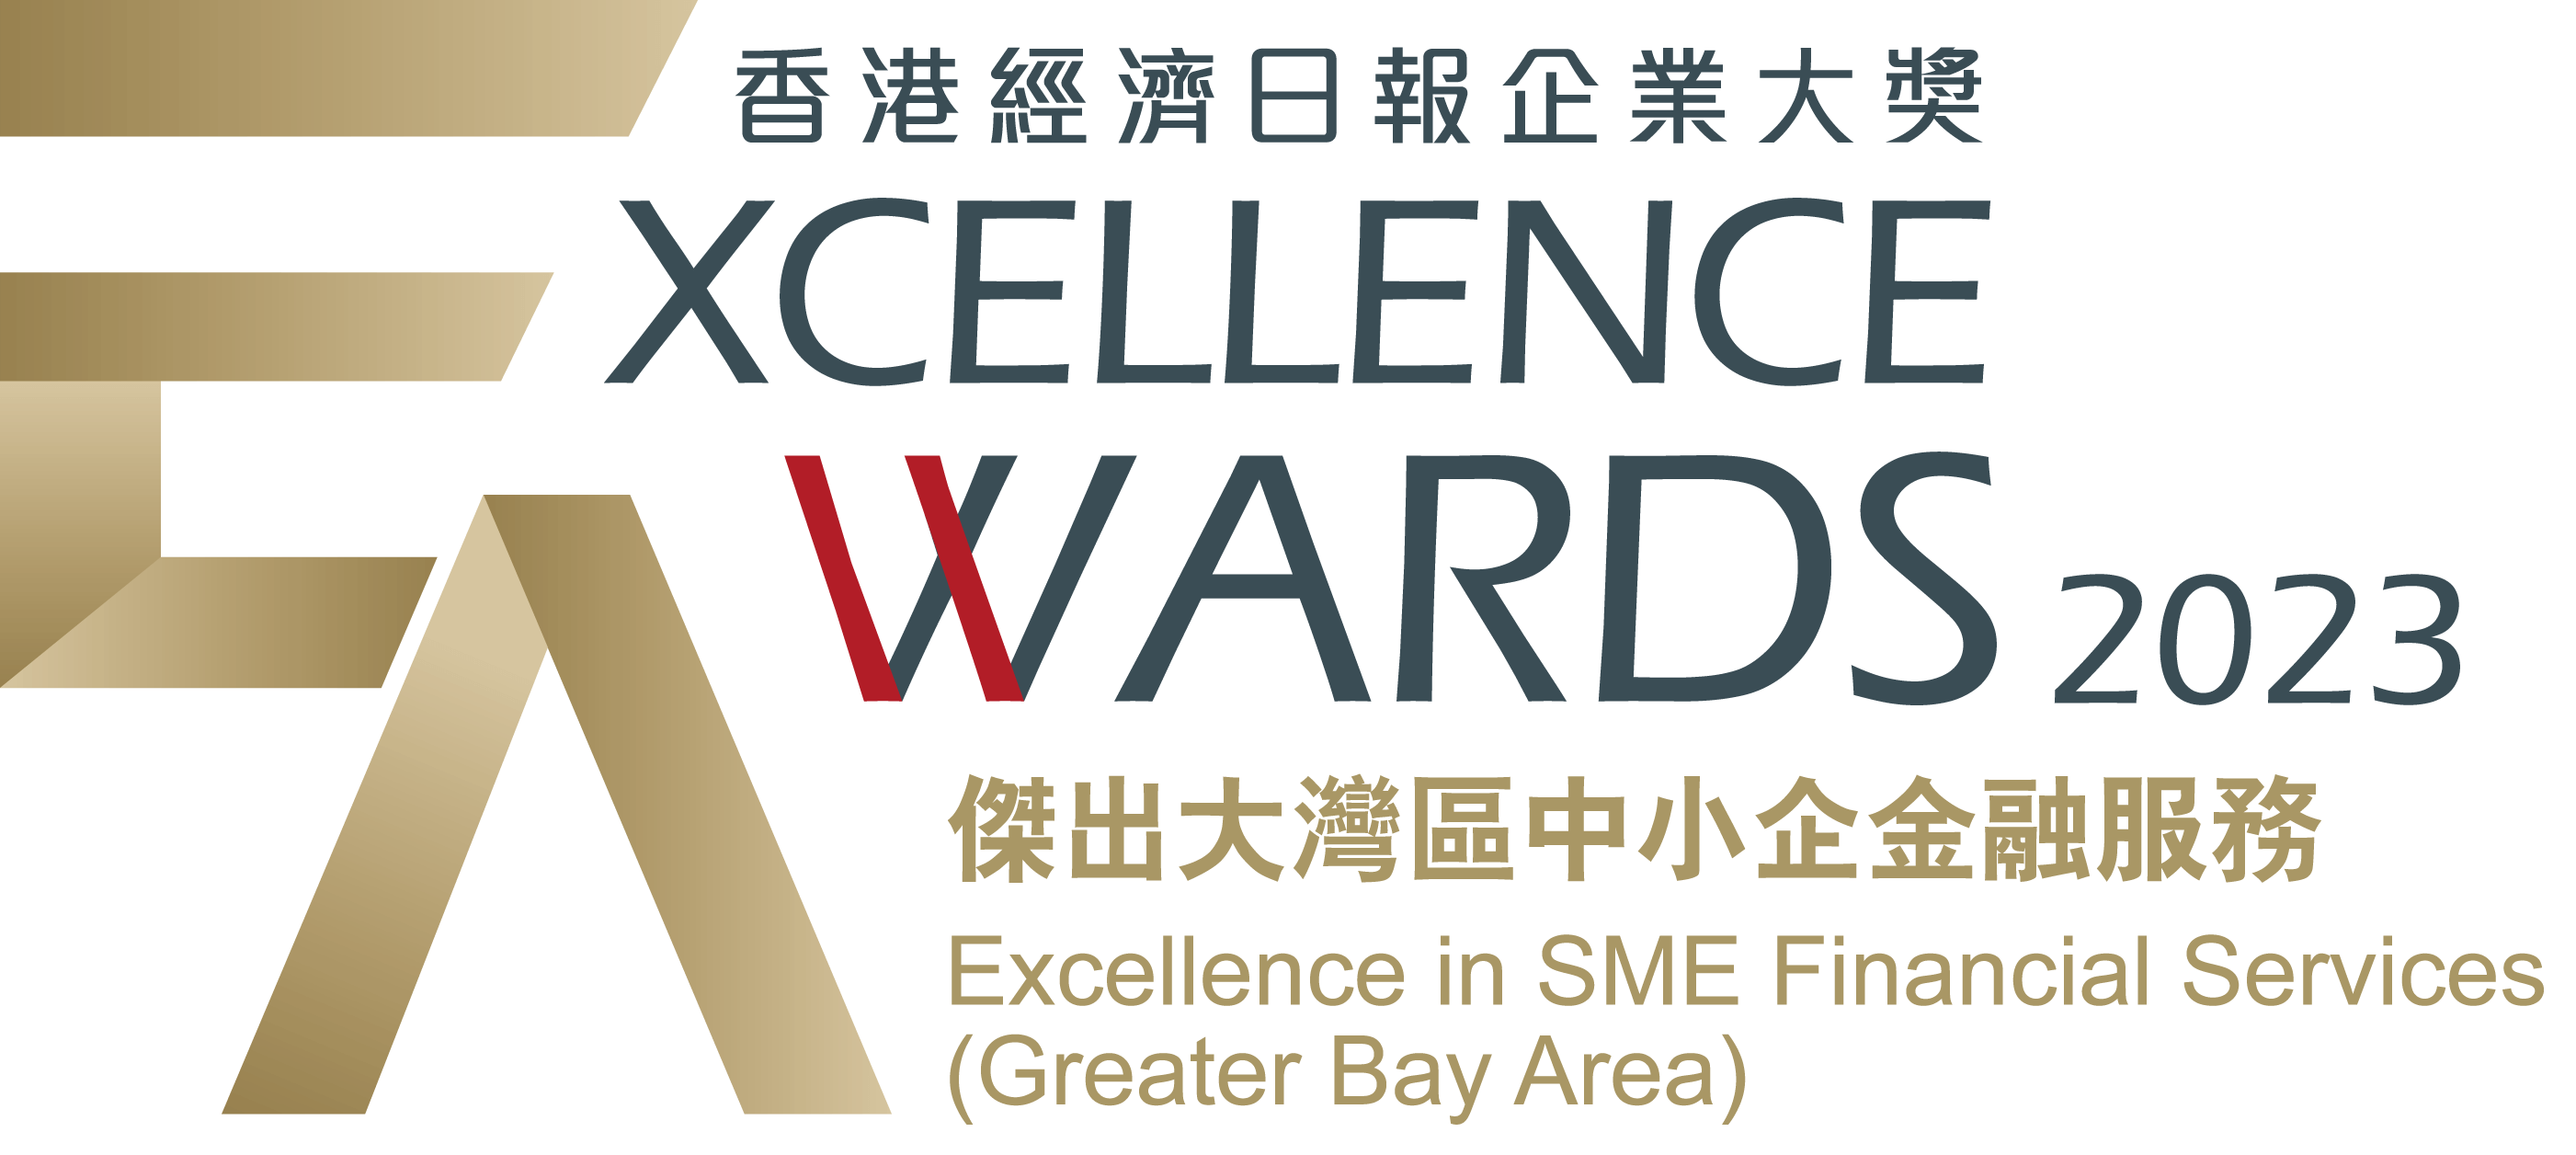 香港經濟日報企業大獎2023<br/>「傑出大灣區中小企金融服務」